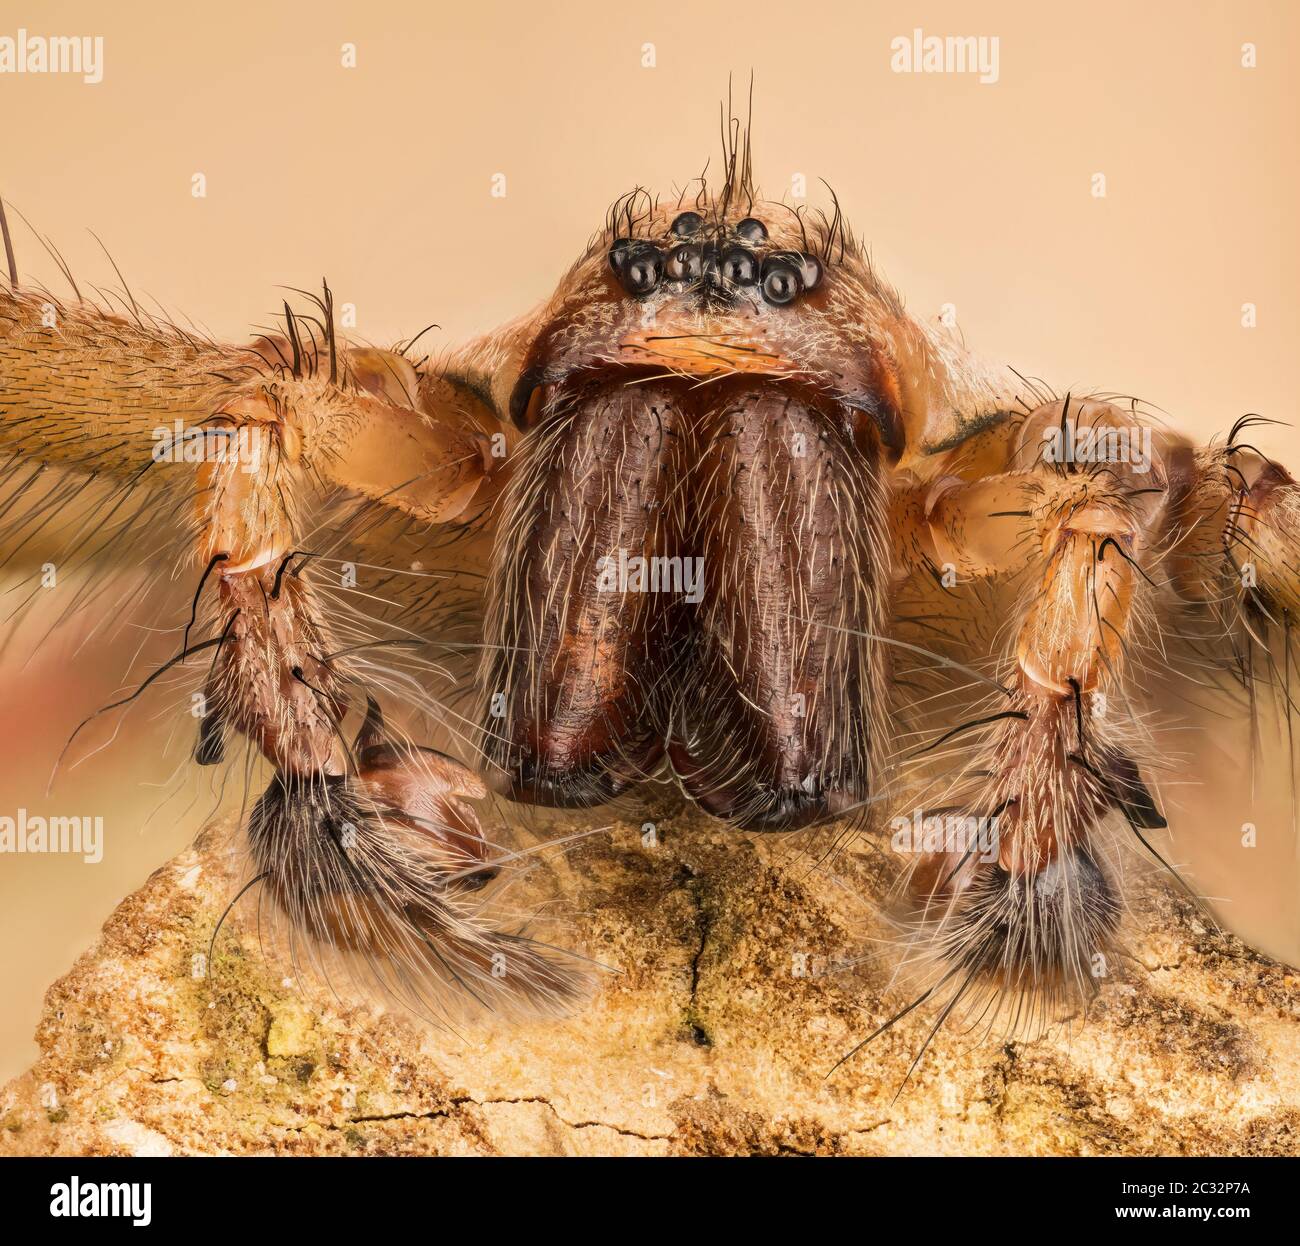 Macro foco de apilamiento de la hembra Giant House Spider. Su nombre latino es Eratigena atrica. Foto de stock